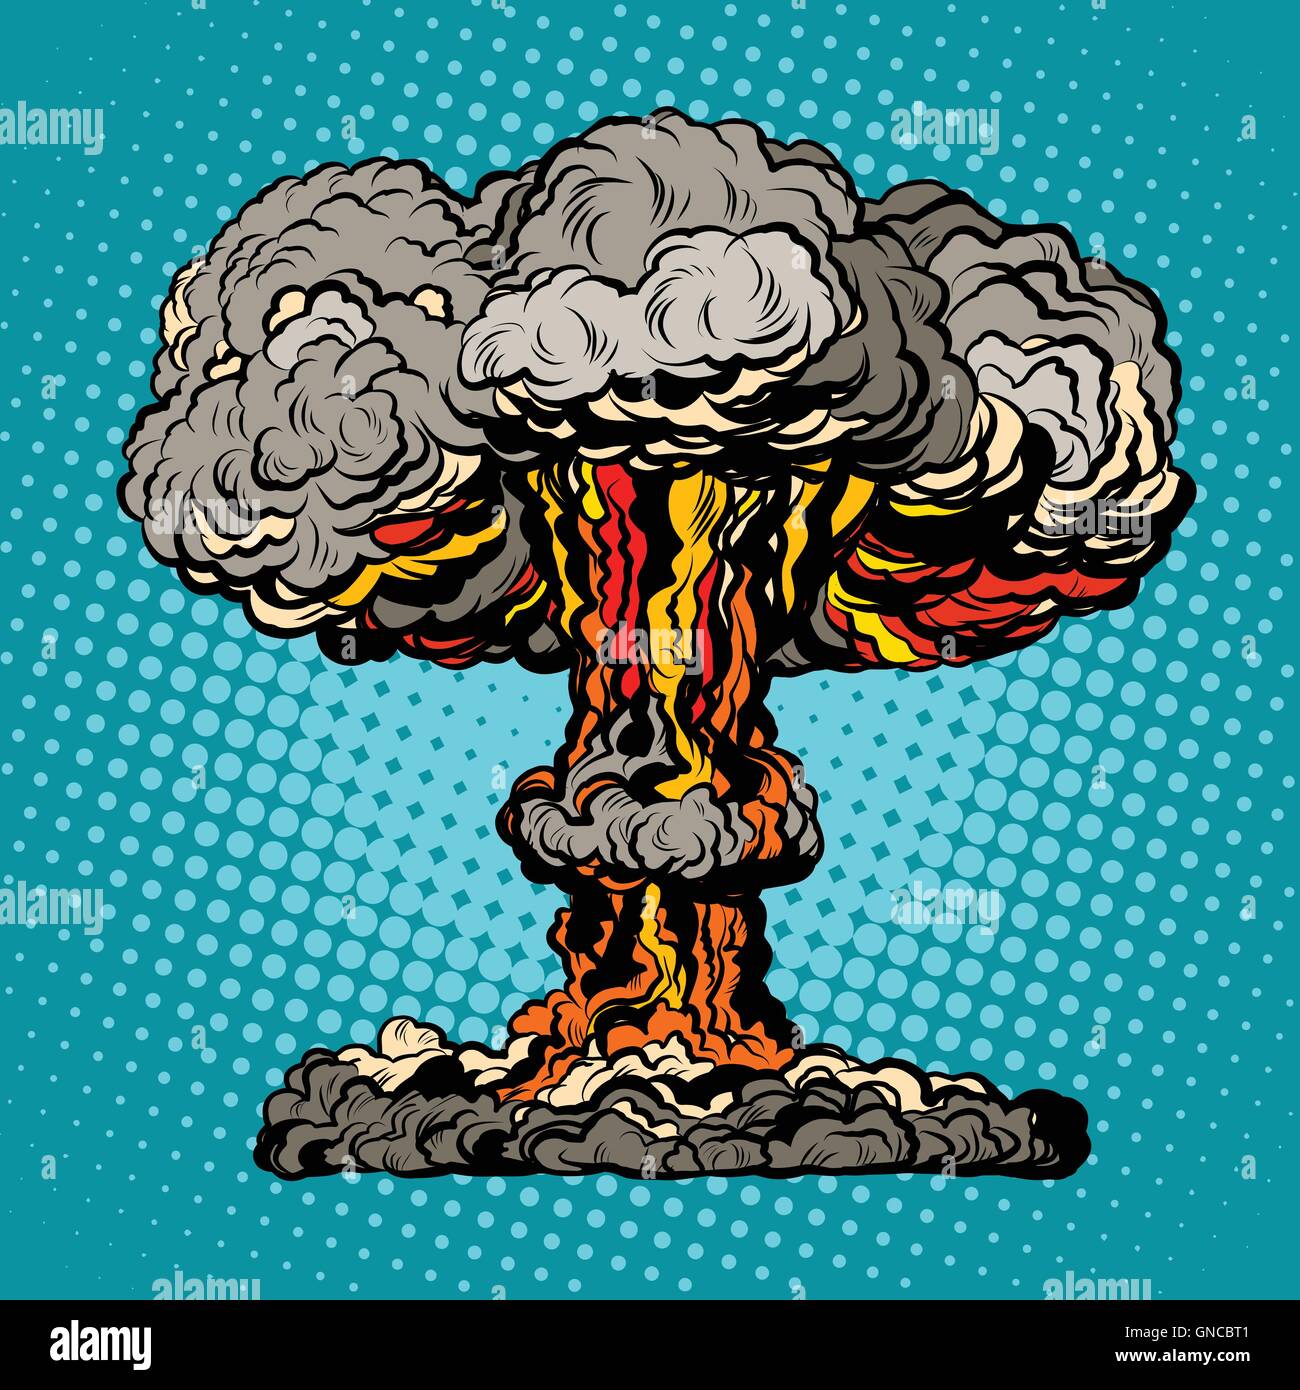 Esplosione nucleare funghi radioattivi pop art Illustrazione Vettoriale